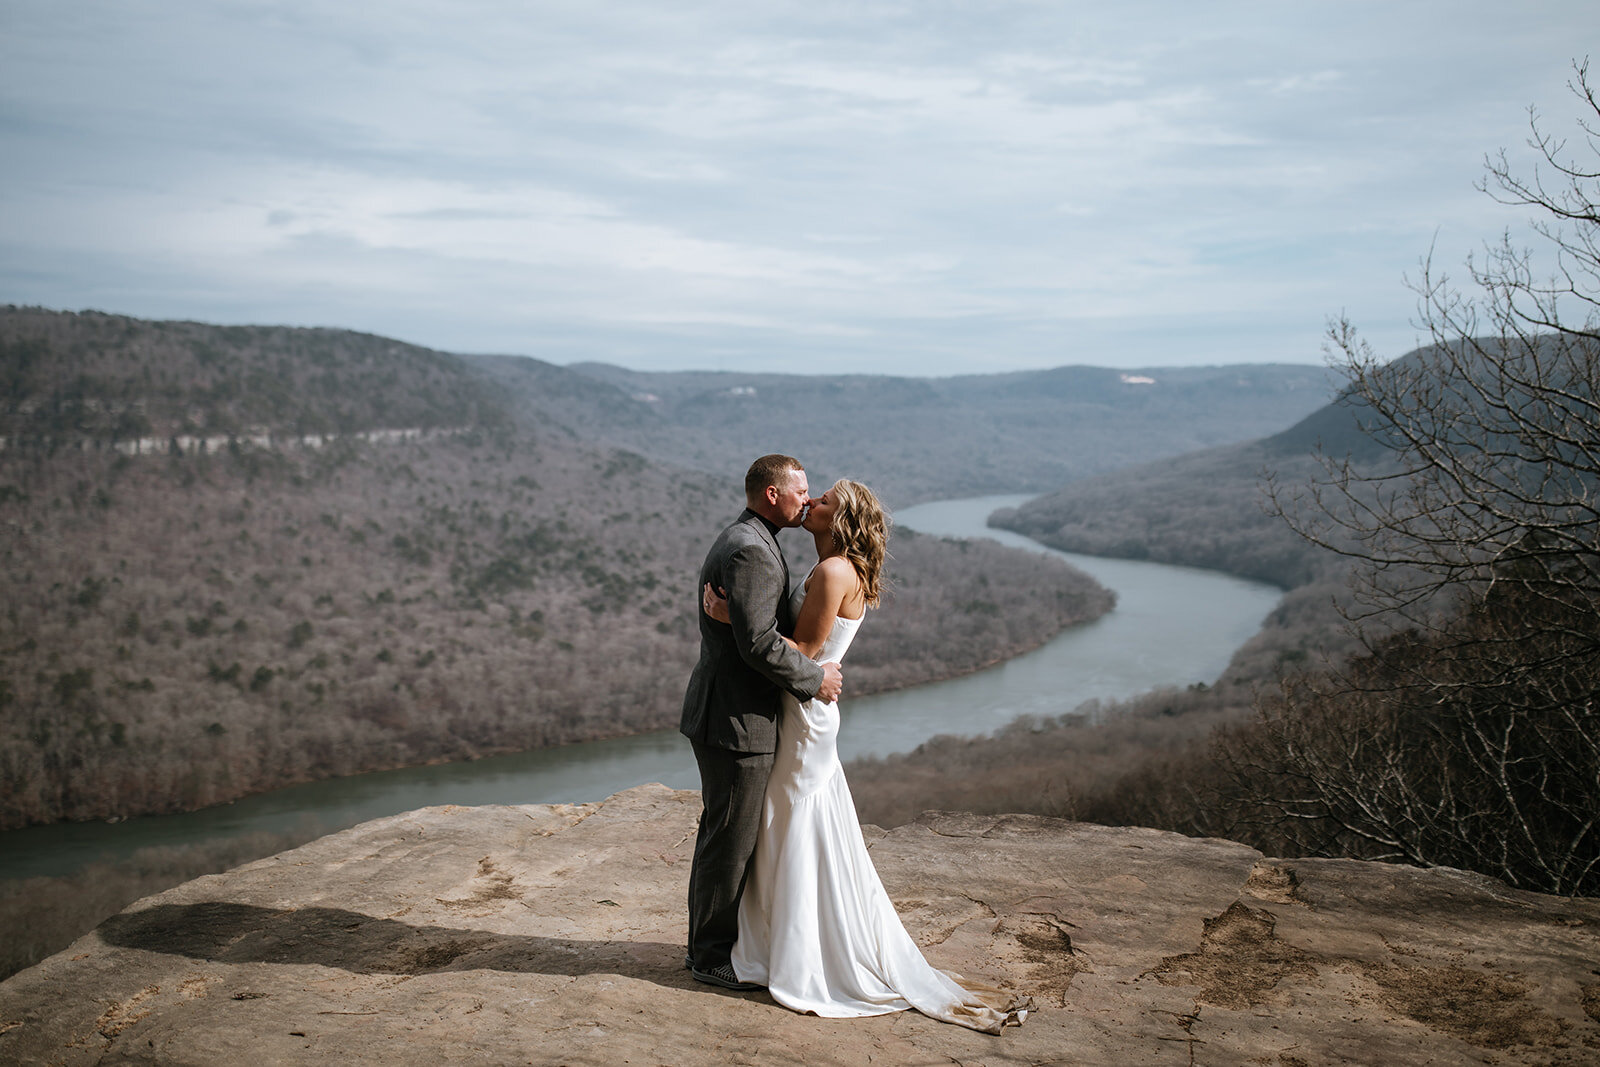 snoopers-rock-adventure-elopement-chattanooga-wedding-photographerfoster-falls-elopement-chattanooga-wedding-photographer-419_websize.jpg